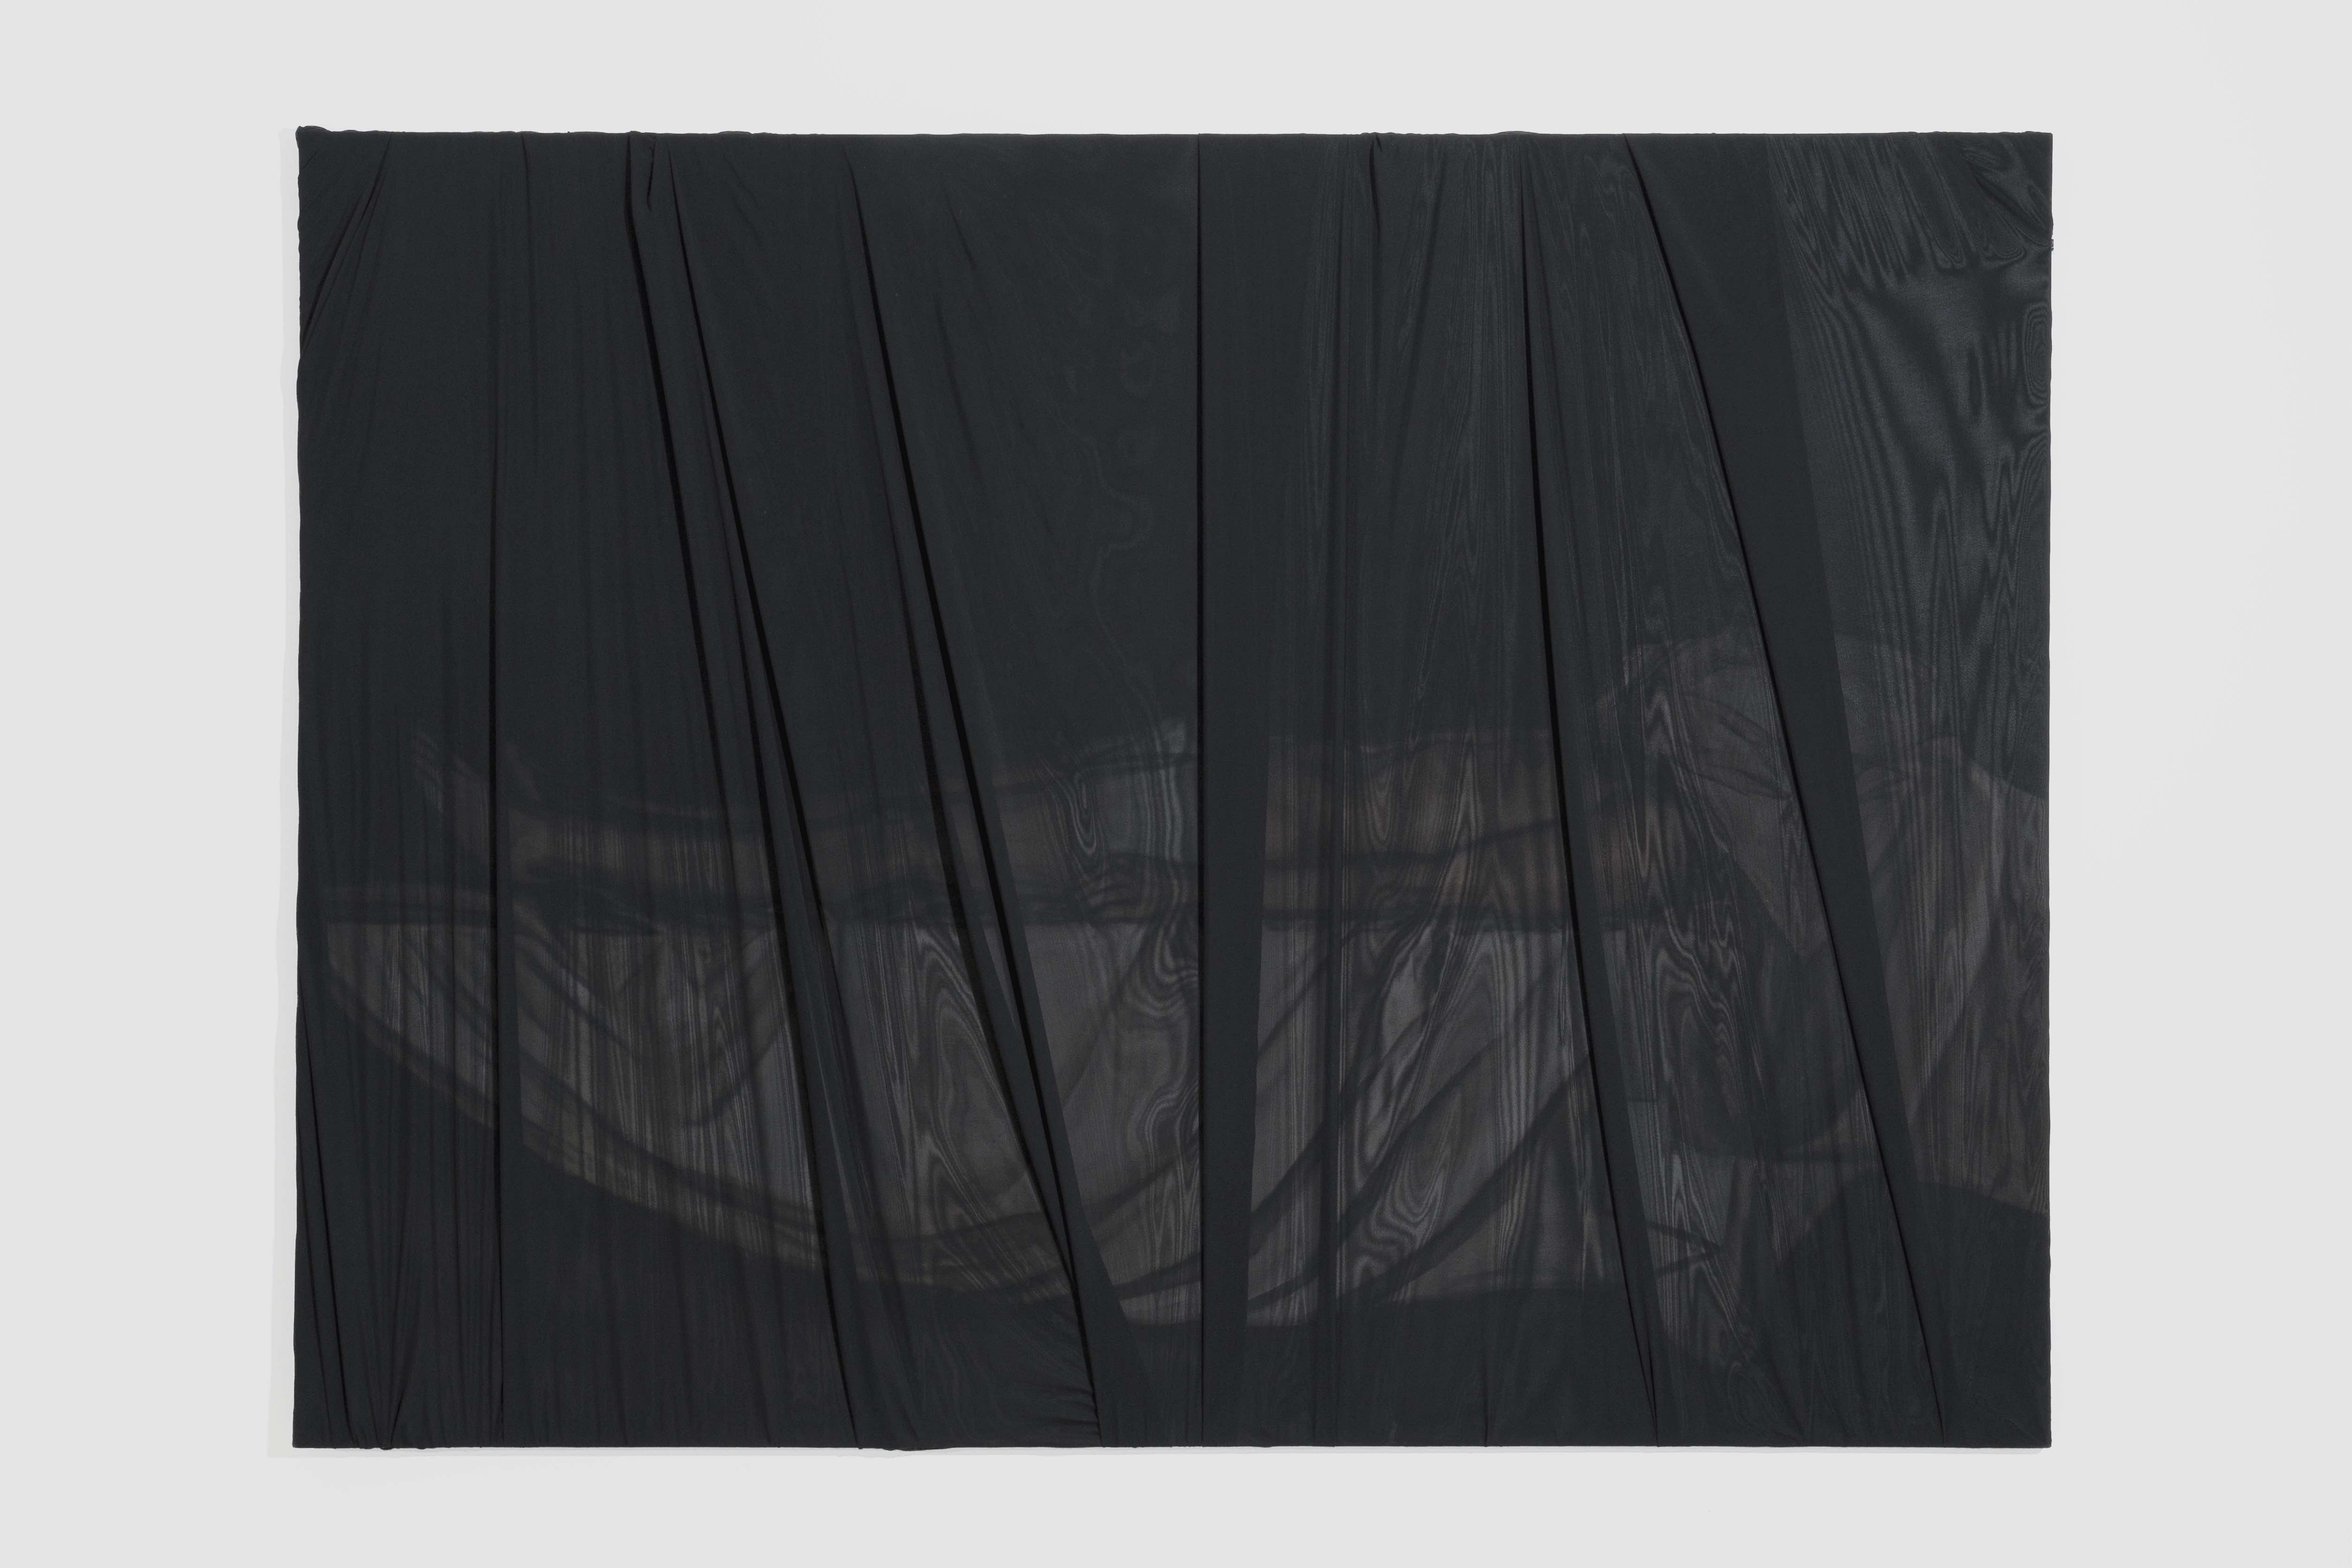 Gabriel O’Shea, “La otra piedad”, 2021, Óleo sobre lienzo cubierto con tela, 150 x 200 cm. © Galería Hilario Galguera. Foto: Jose Rodríguez y Eduardo Rodríguez.